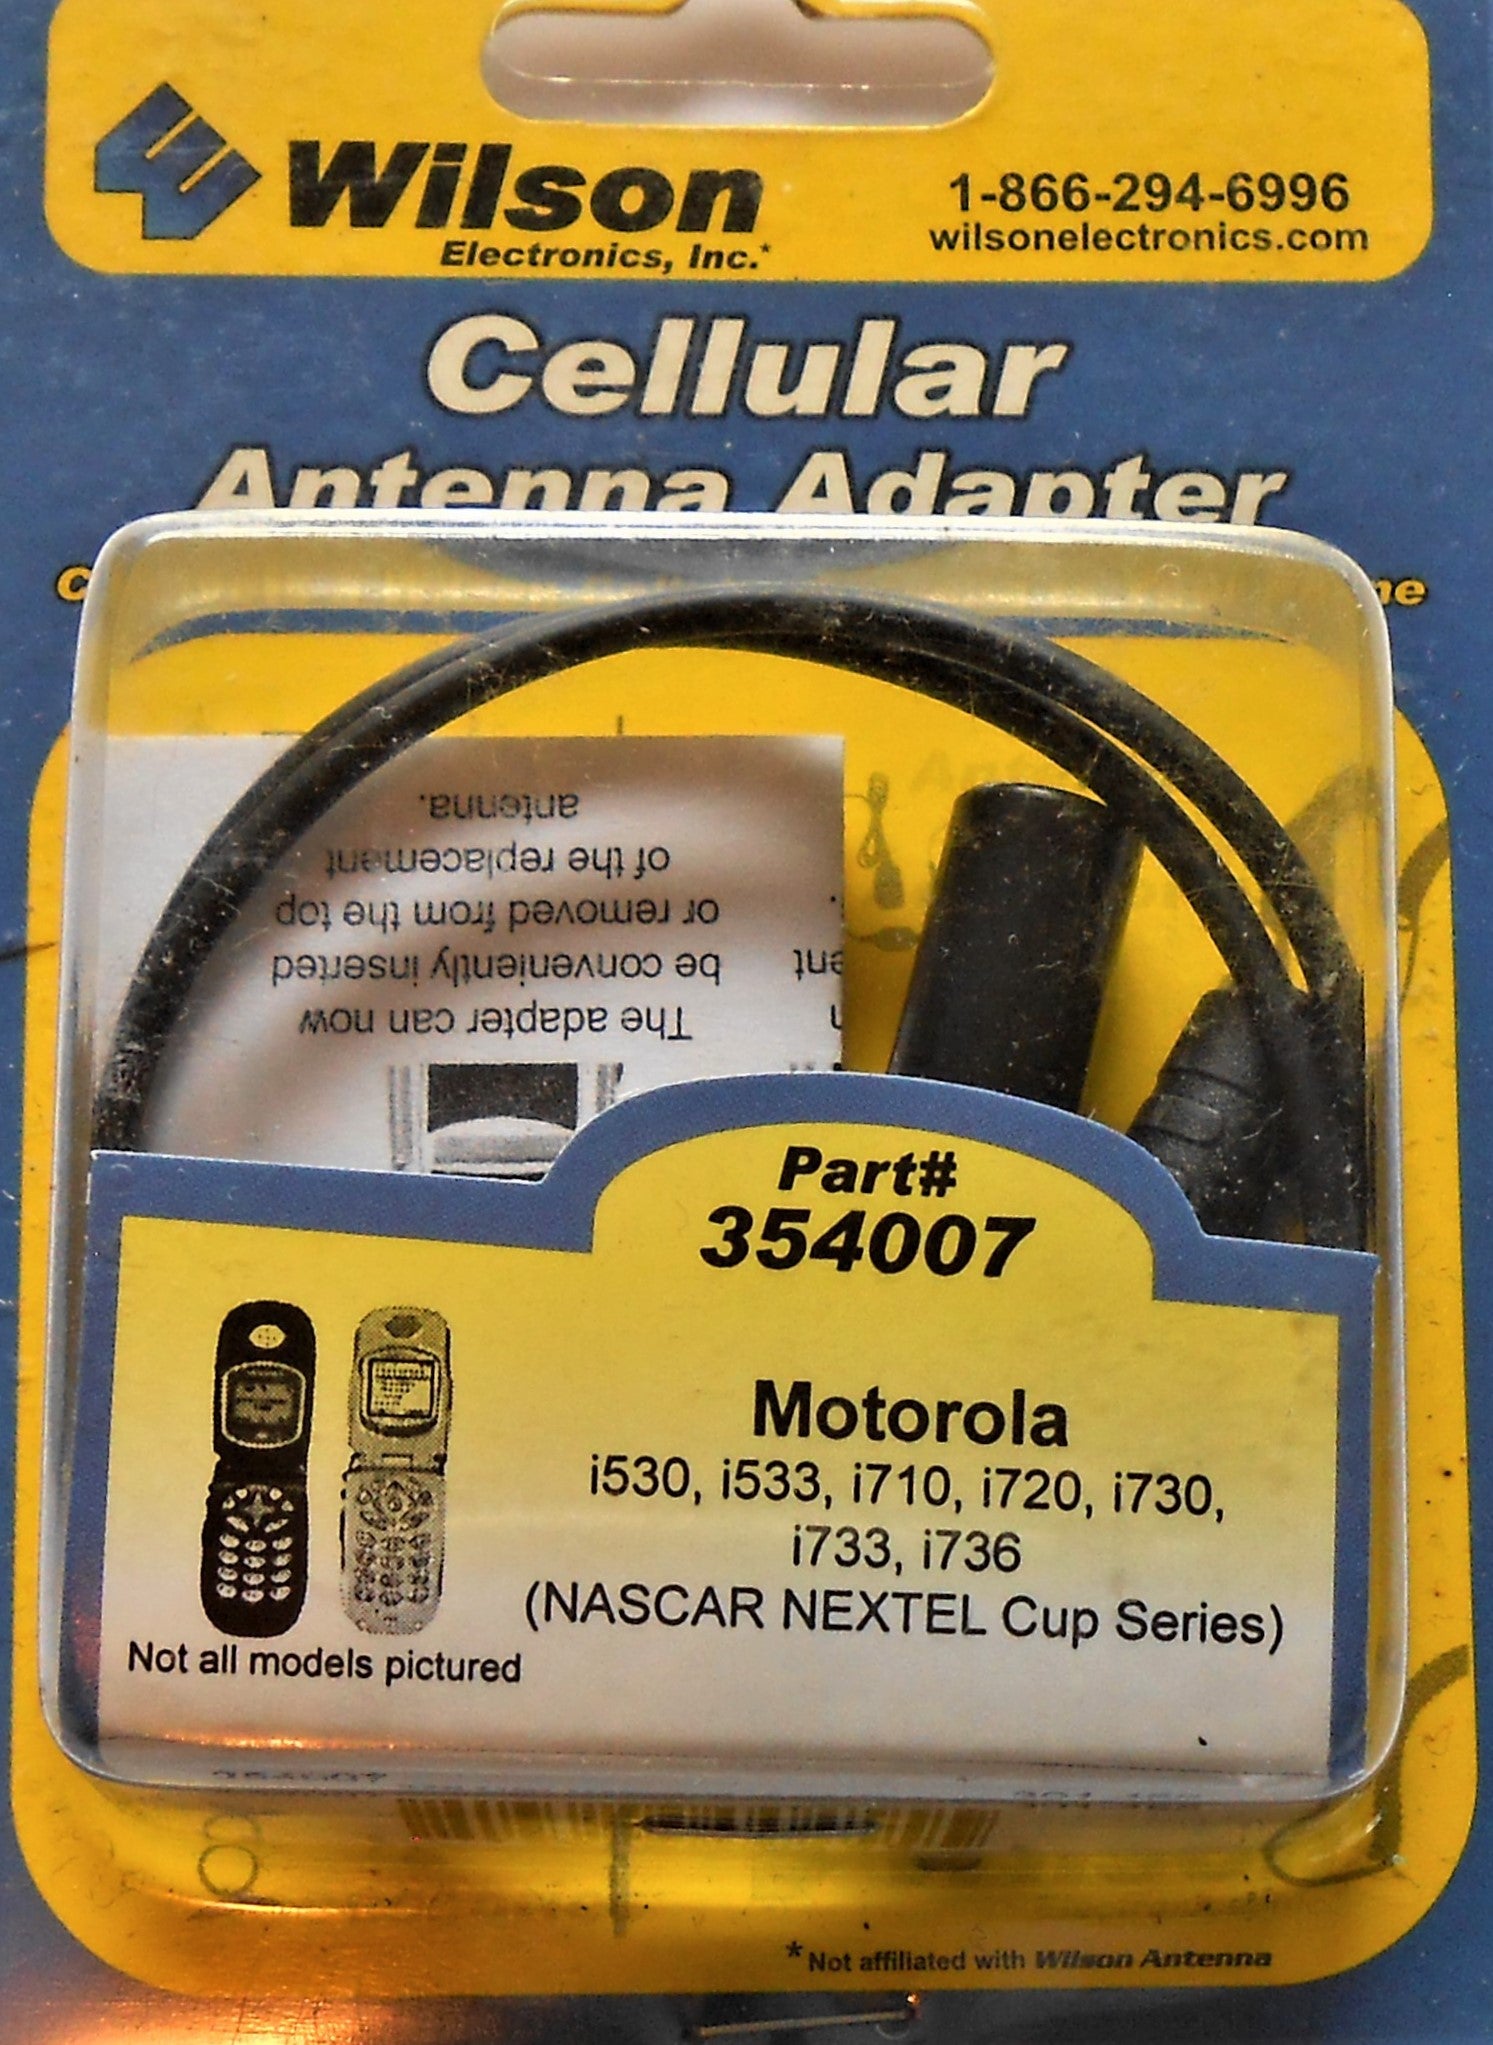 Wilson Cellular Antenna Adapter part# 354007